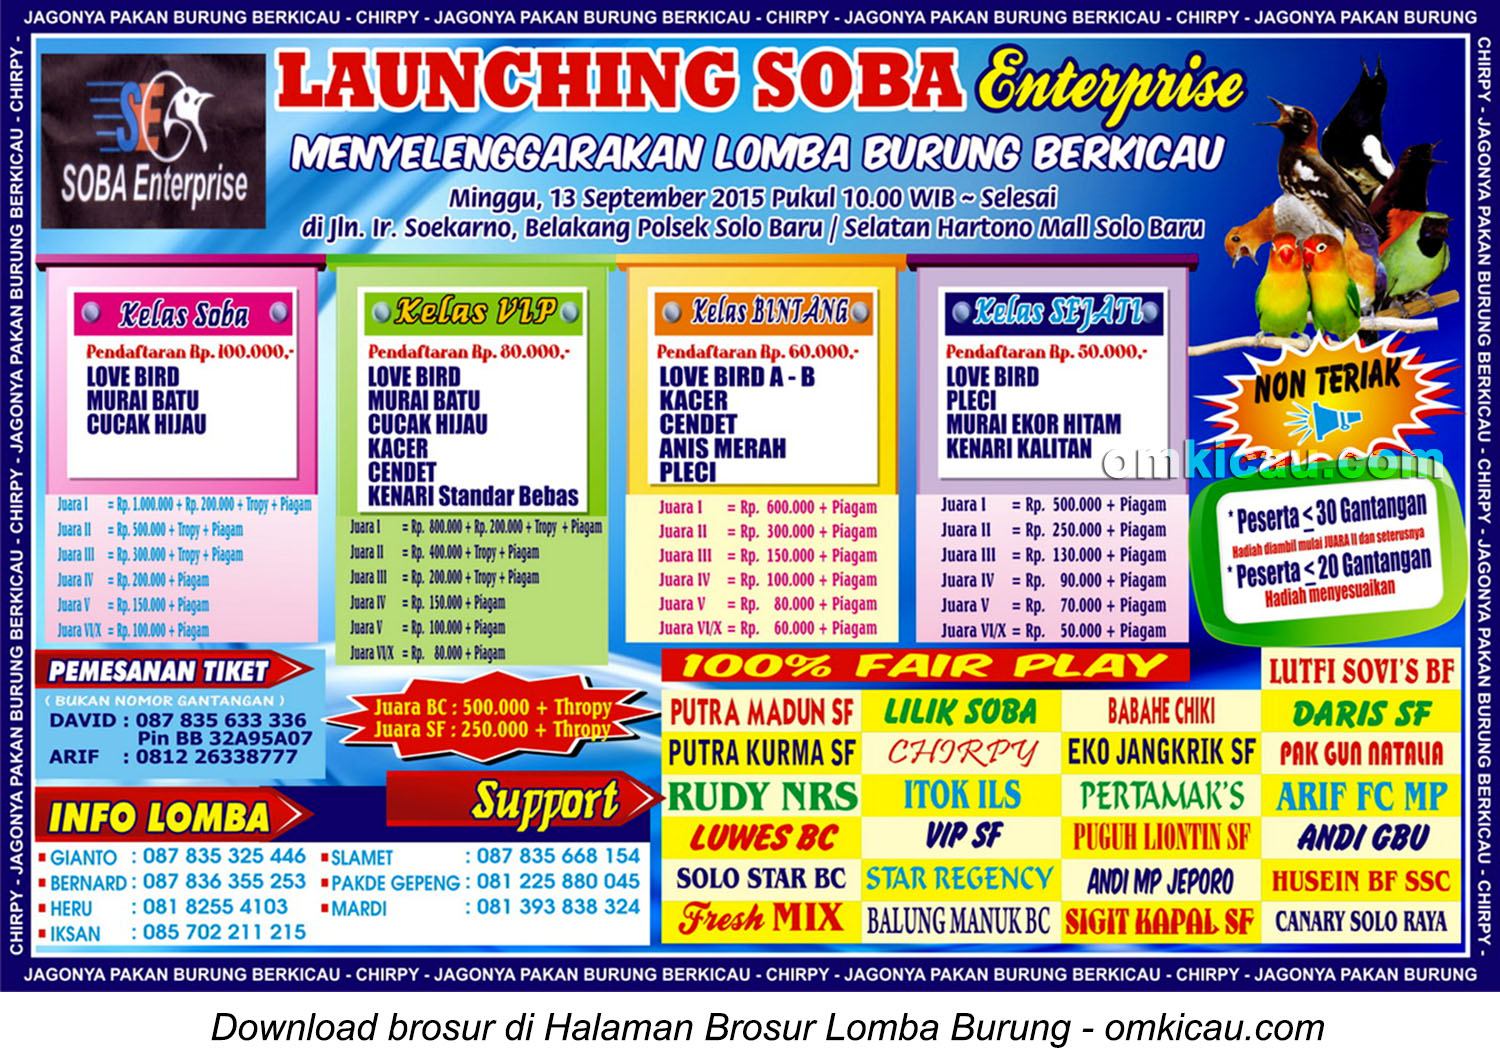 Brosur Lomba Burung Berkicau Launching Soba Enterprise, Solo, 13 September 2015